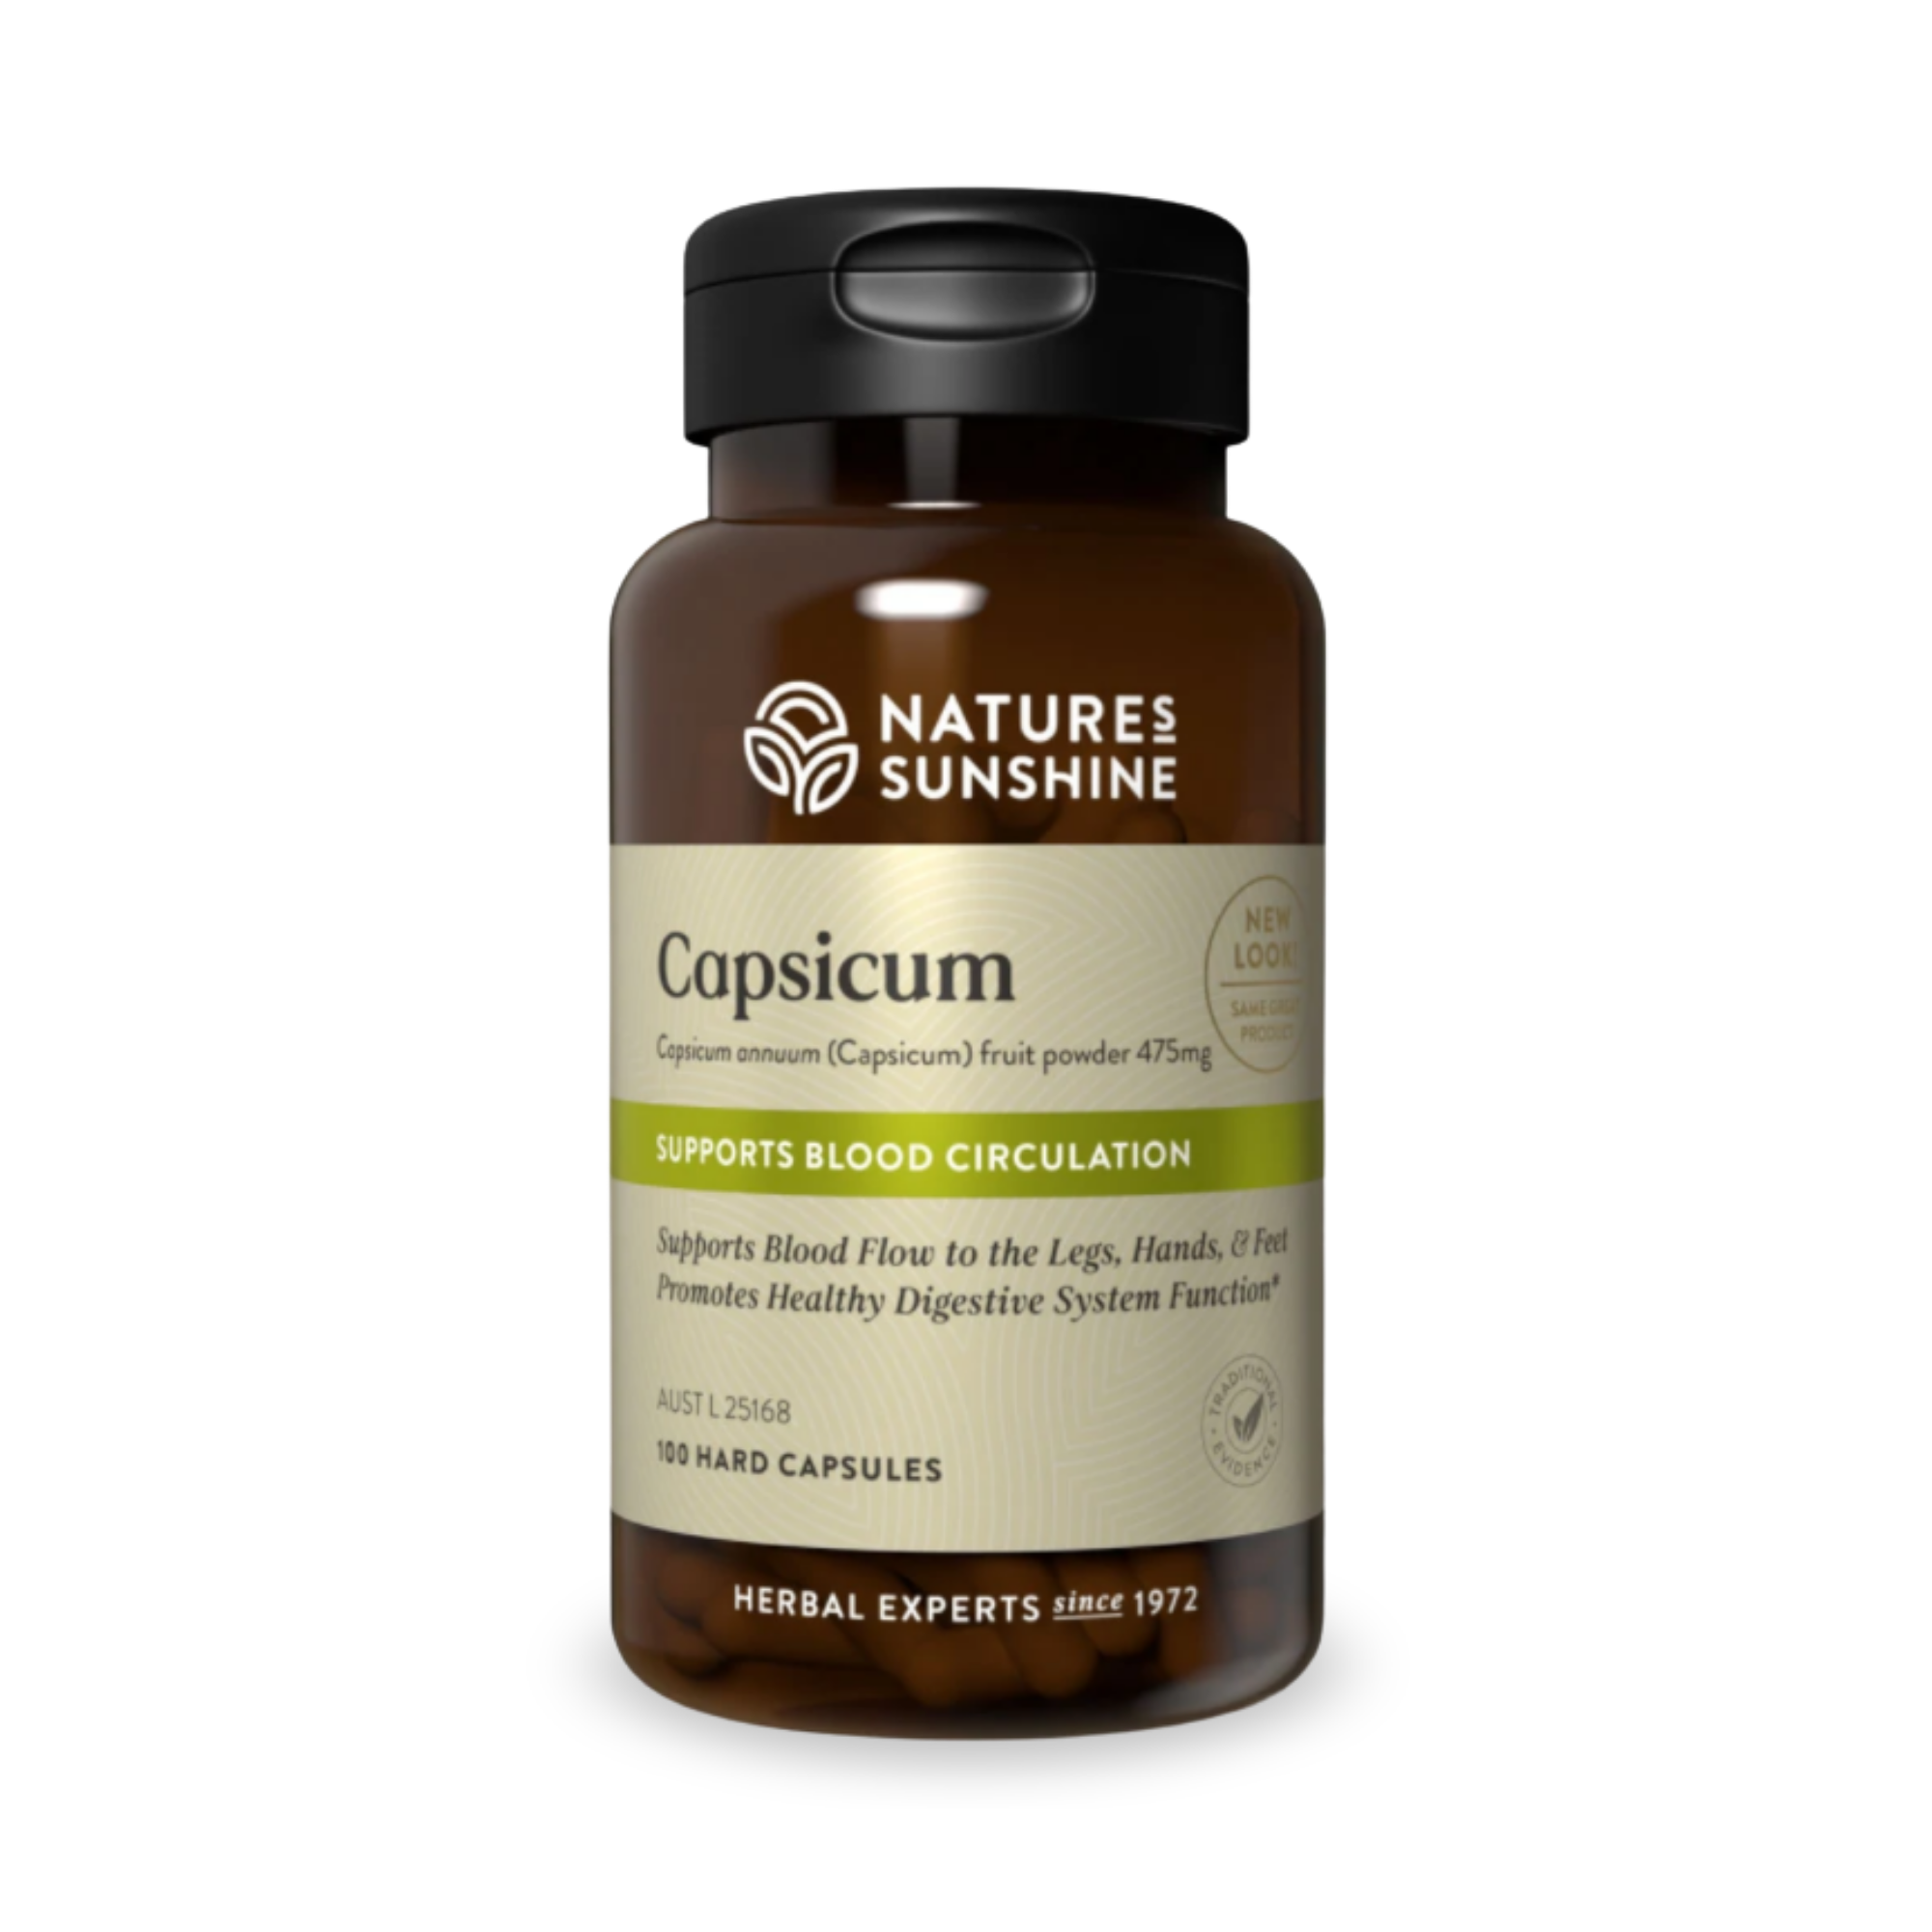 Nature's Sunshine Capsicum 100 Hard Capsules 